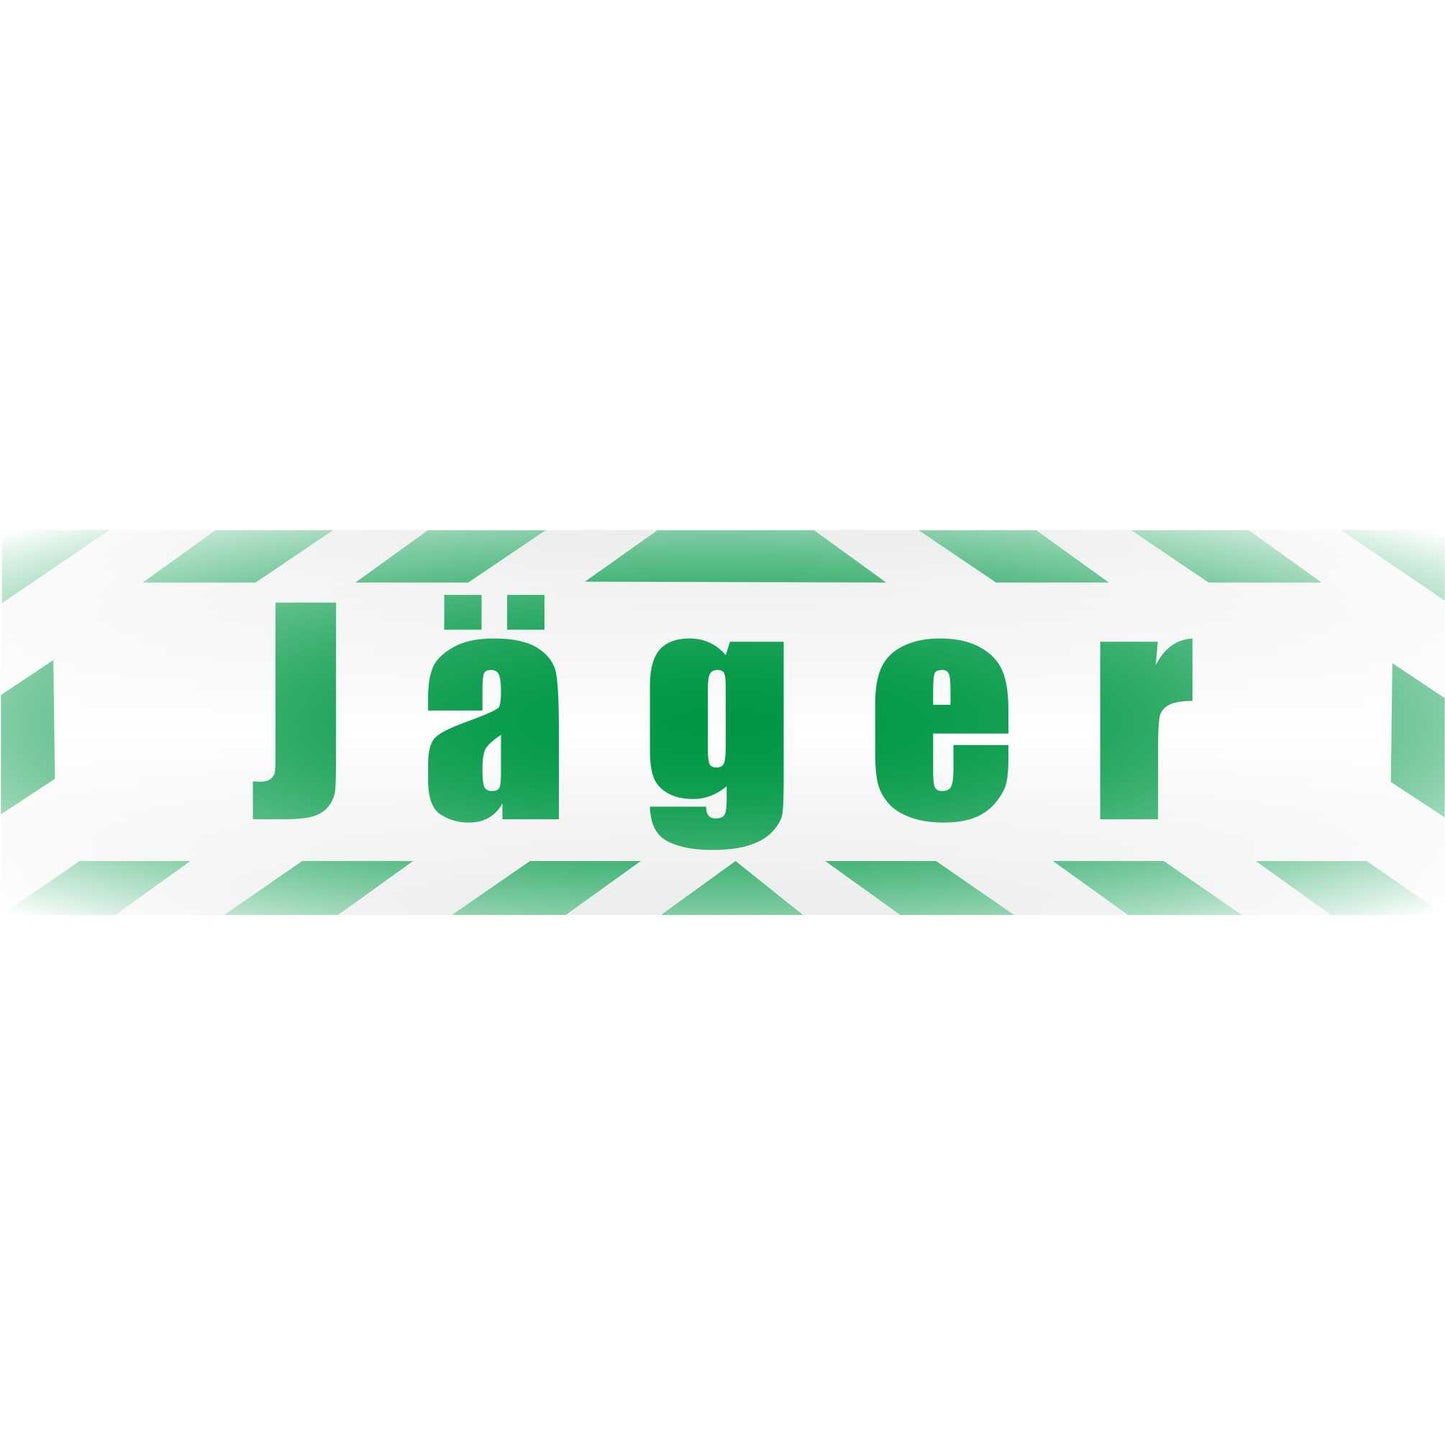 Magnetschild - Jäger - Magnetfolie für Auto - LKW - Truck - Baustelle - Firma